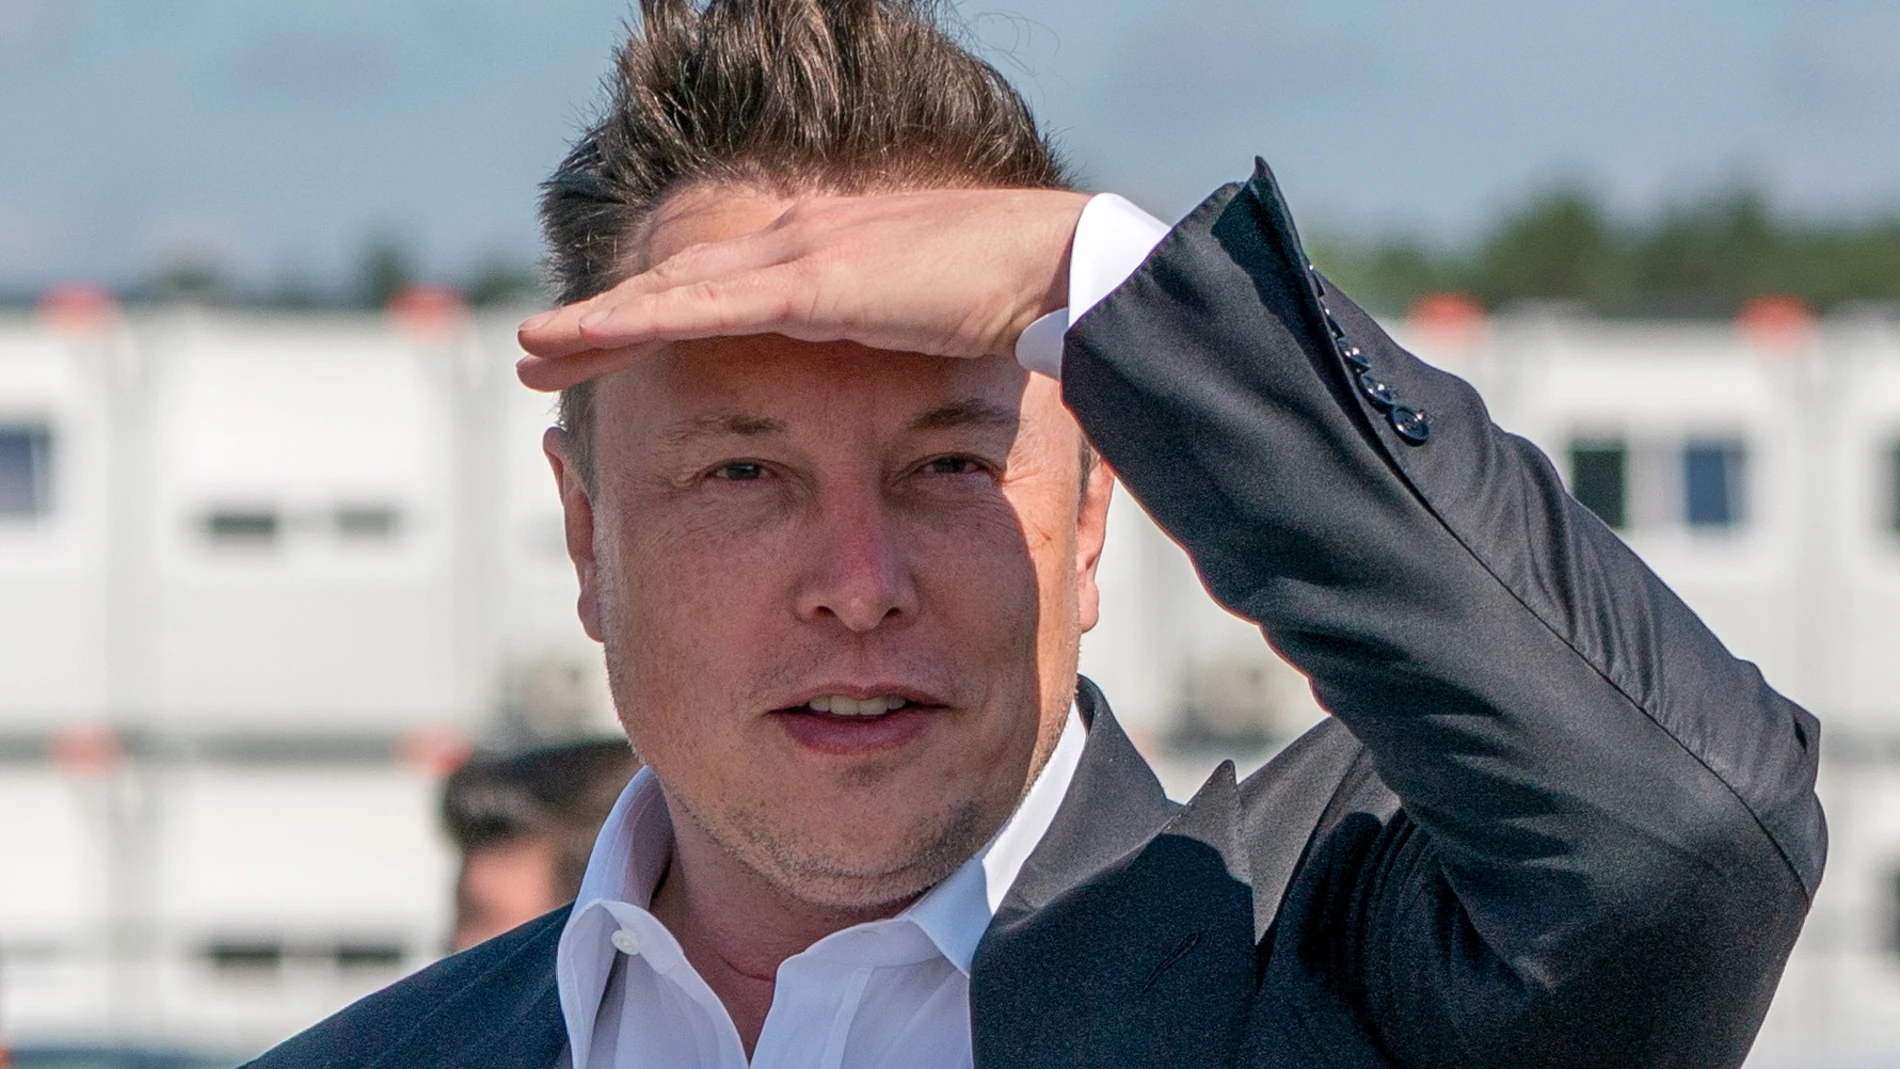 El empresario Elon Musk